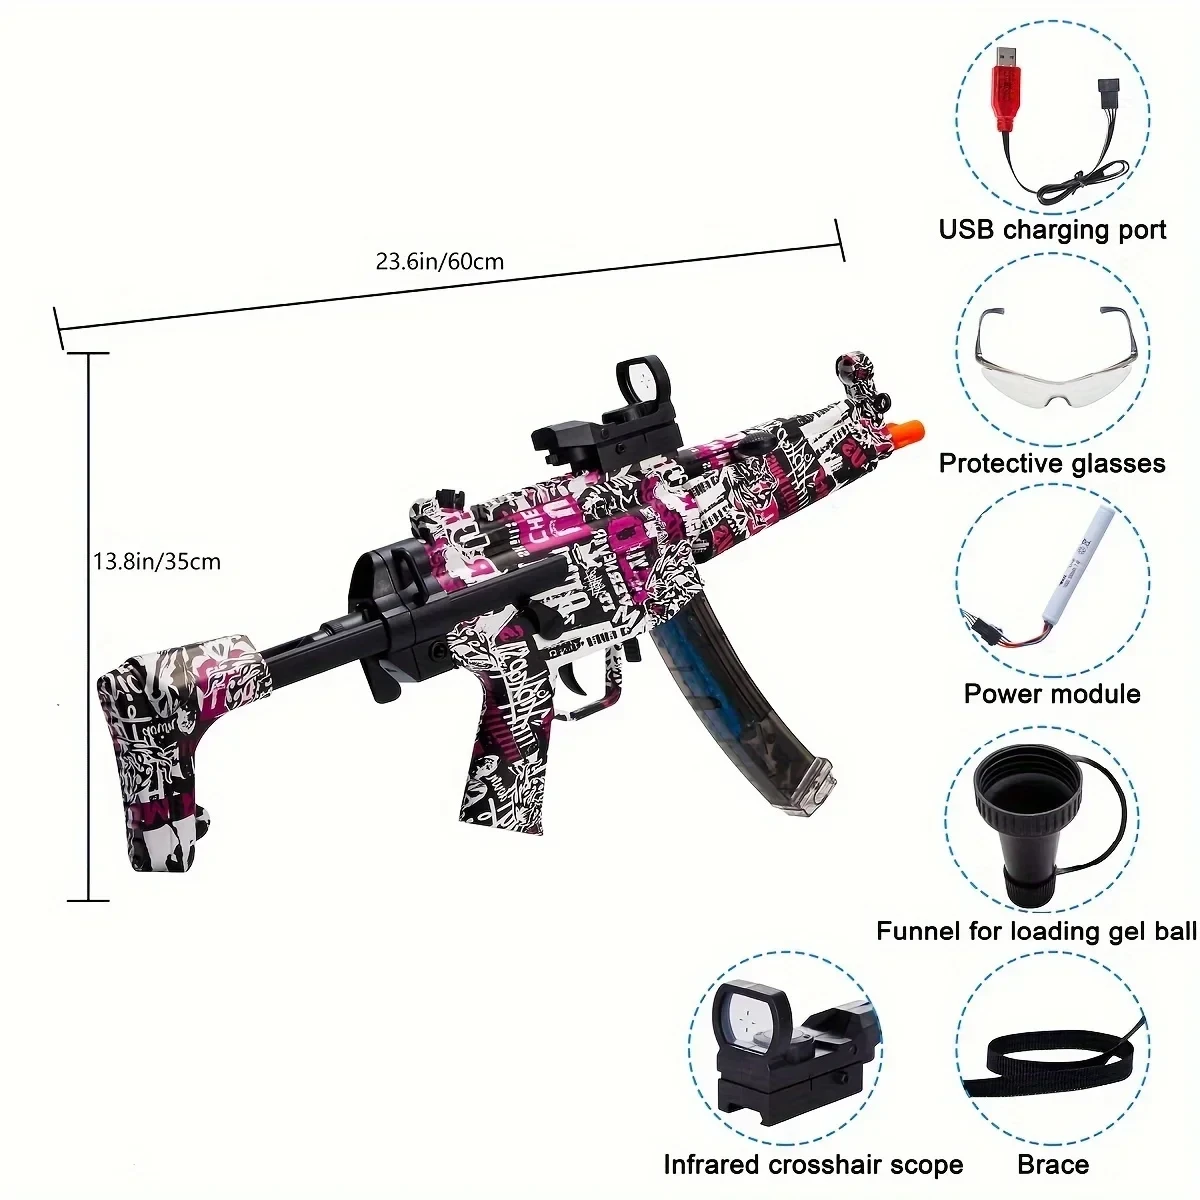 Іграшковий пластиковий автомат МР5К з акумулятором стріляє гідрогелевими орбізами та єва кулями